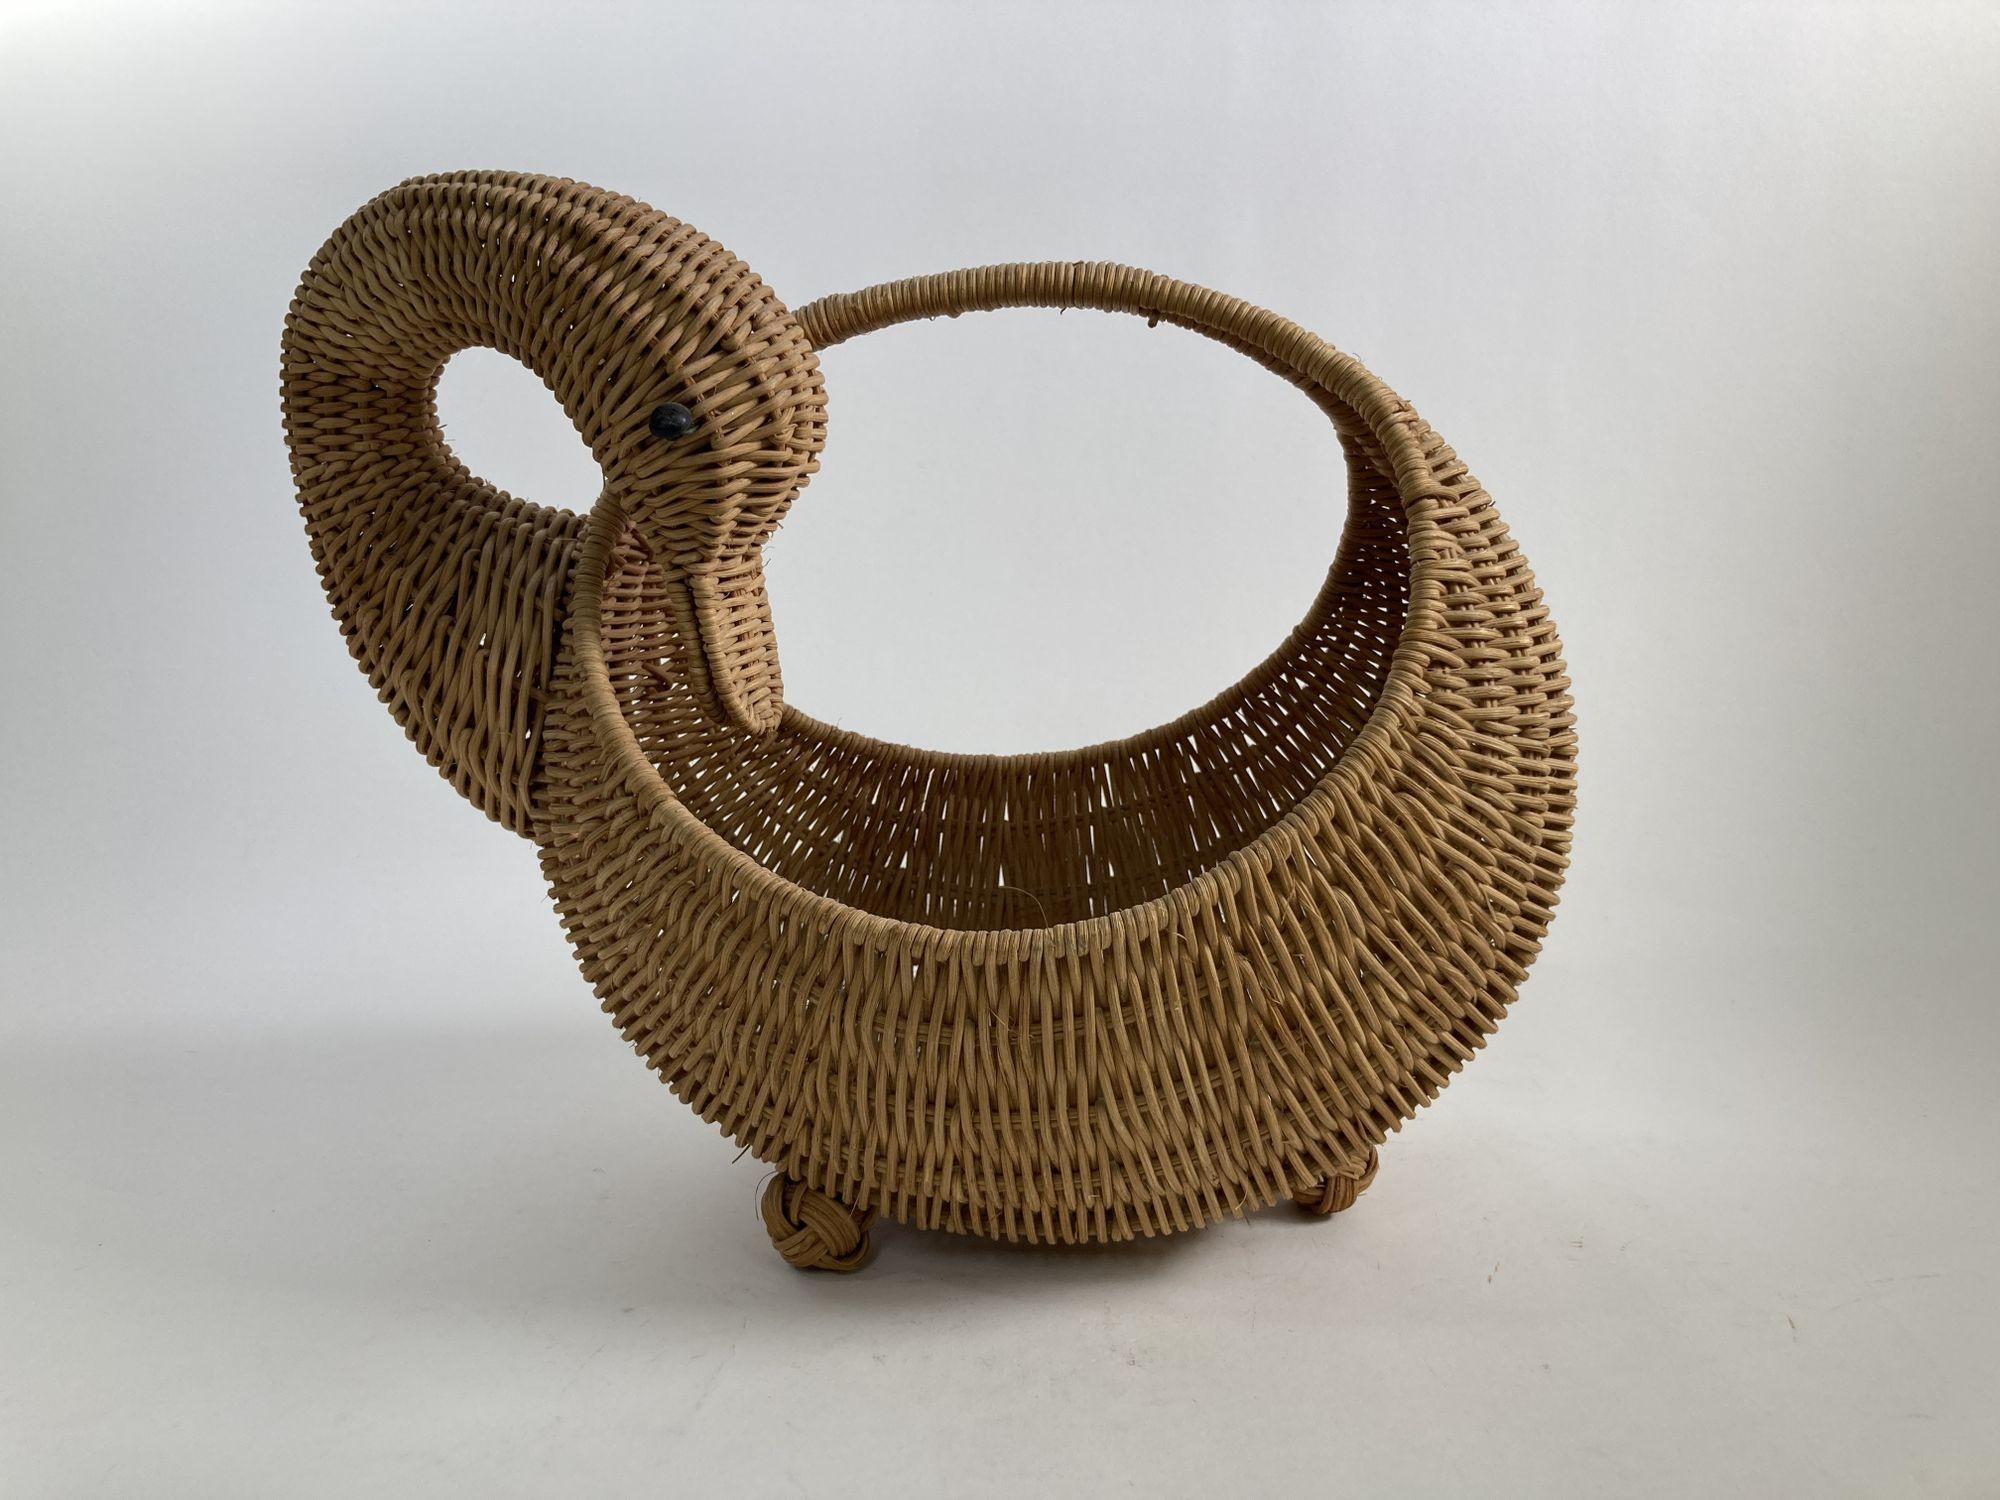 Folk Art Vintage Wicker Woven Duck Motif Basket with Handle